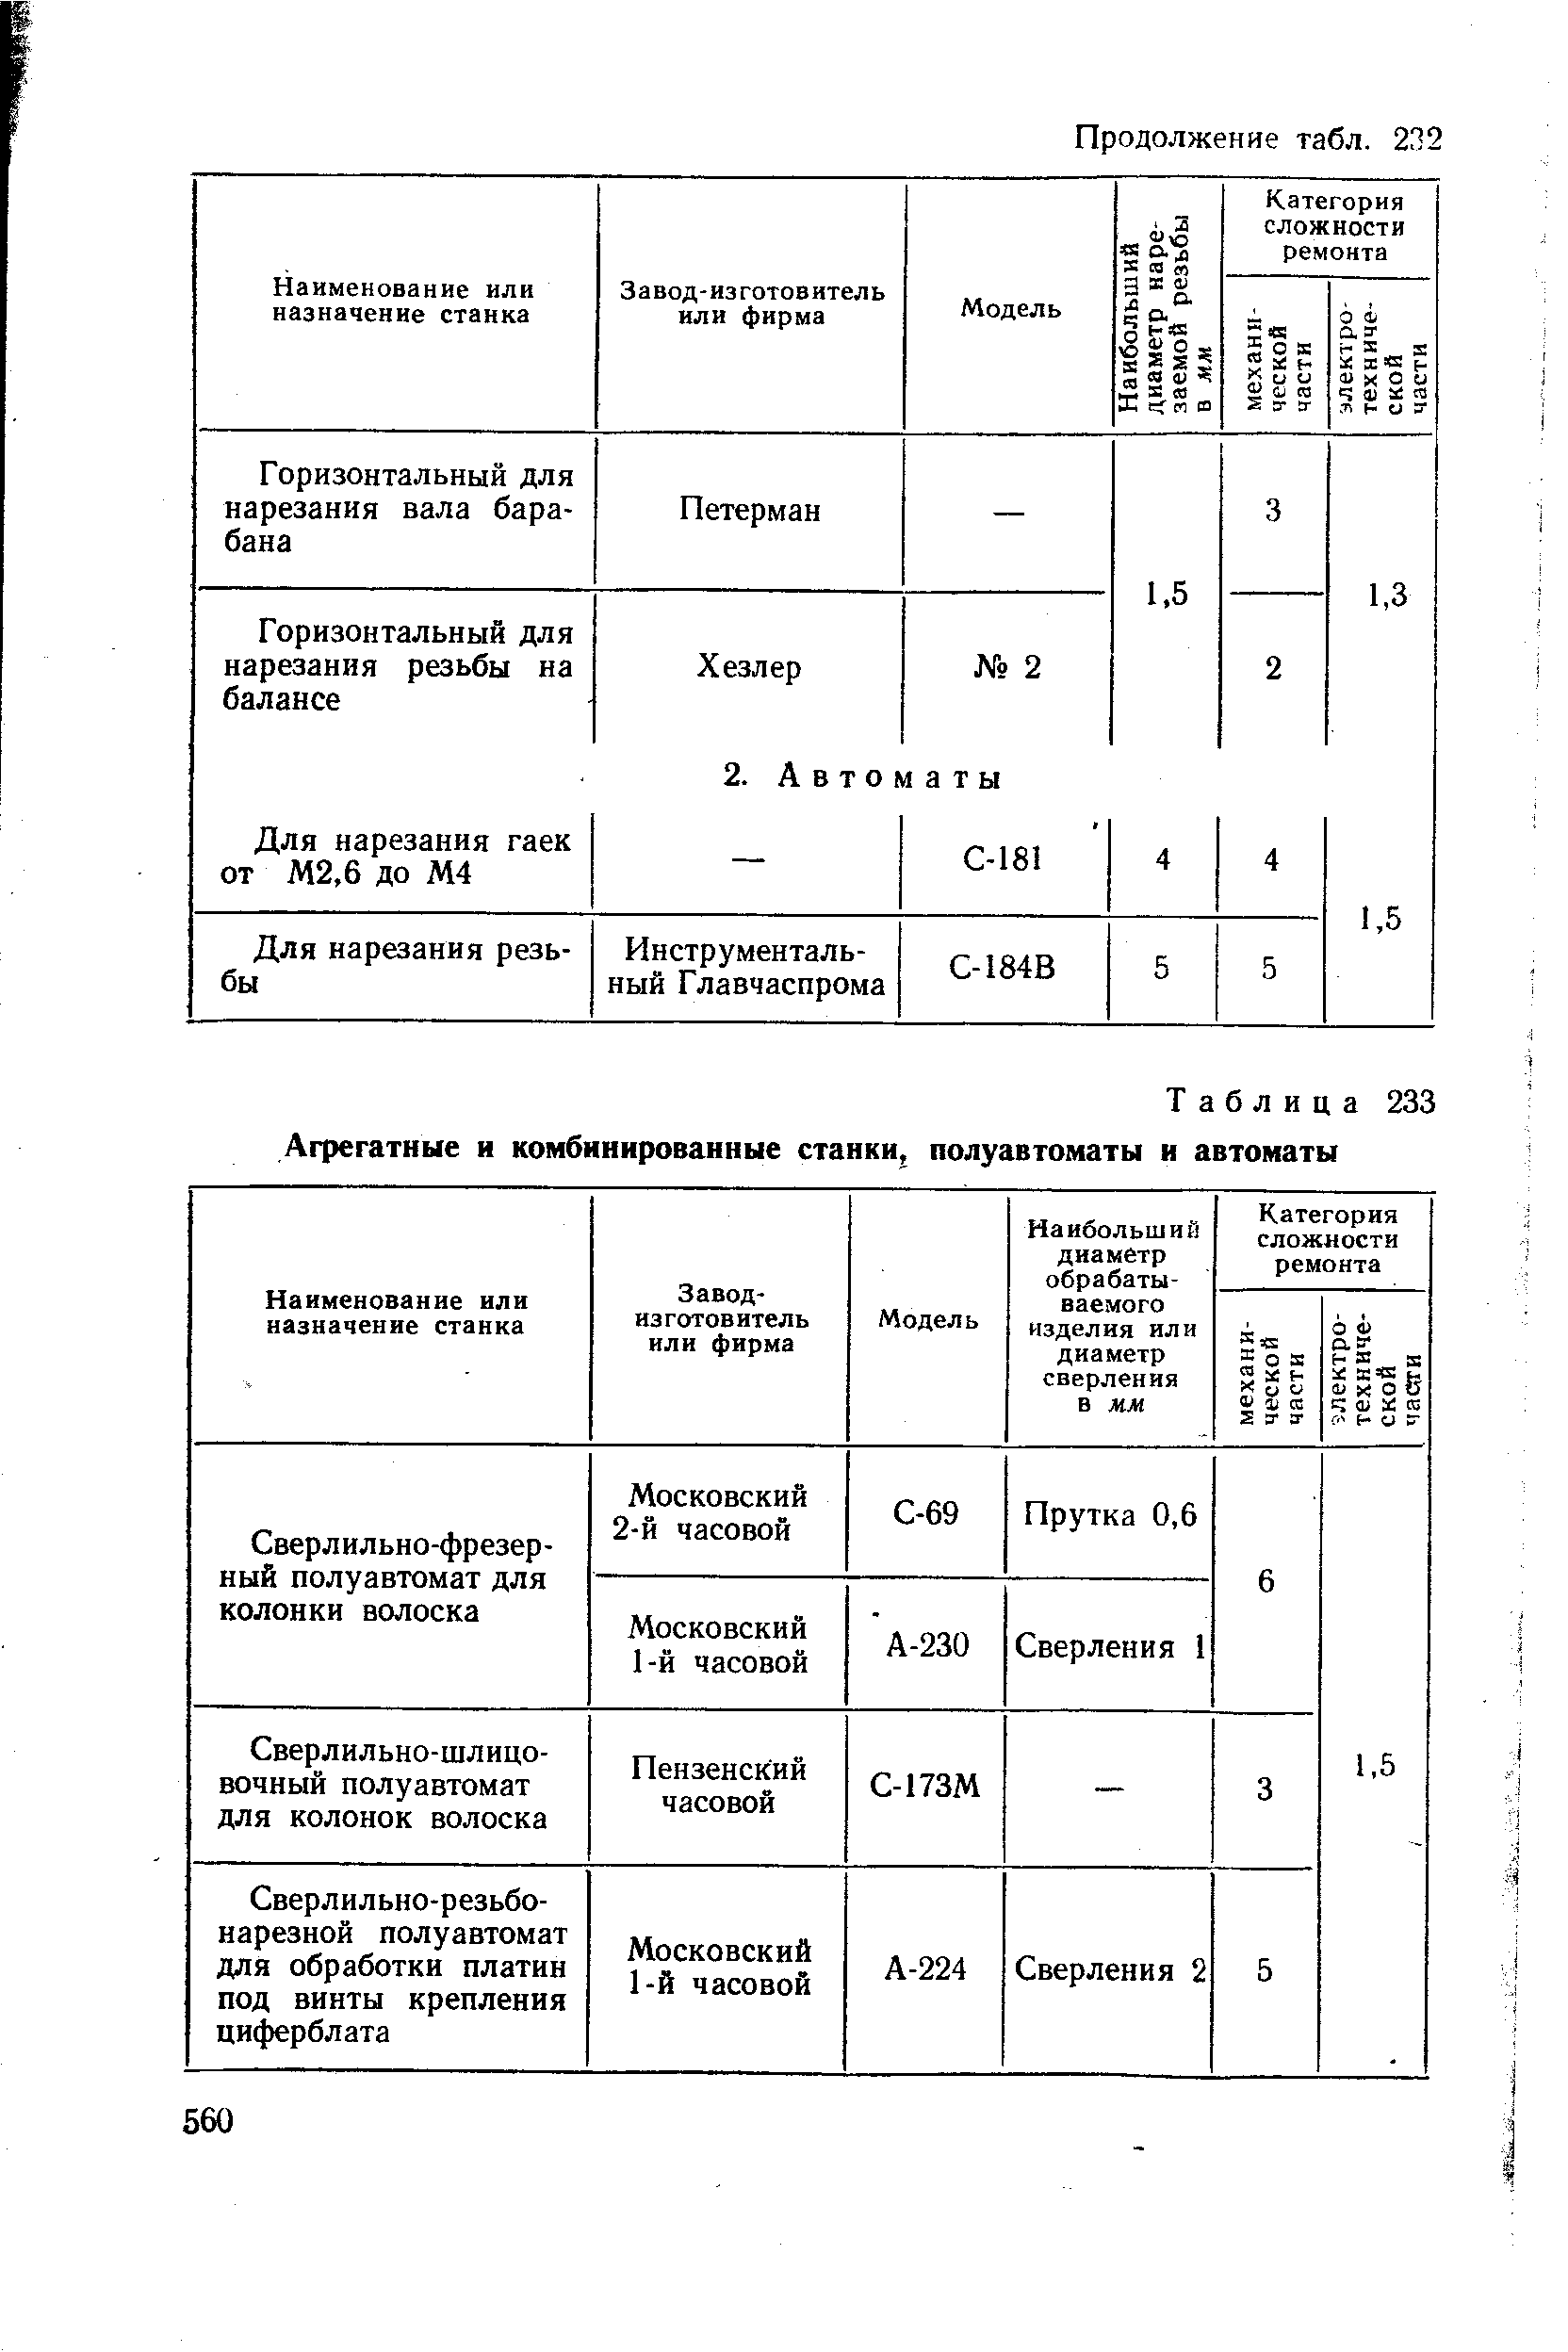 Таблица 233 Агрегатные и <a href="/info/658950">комбинированные станки</a>, полуавтоматы и автоматы
